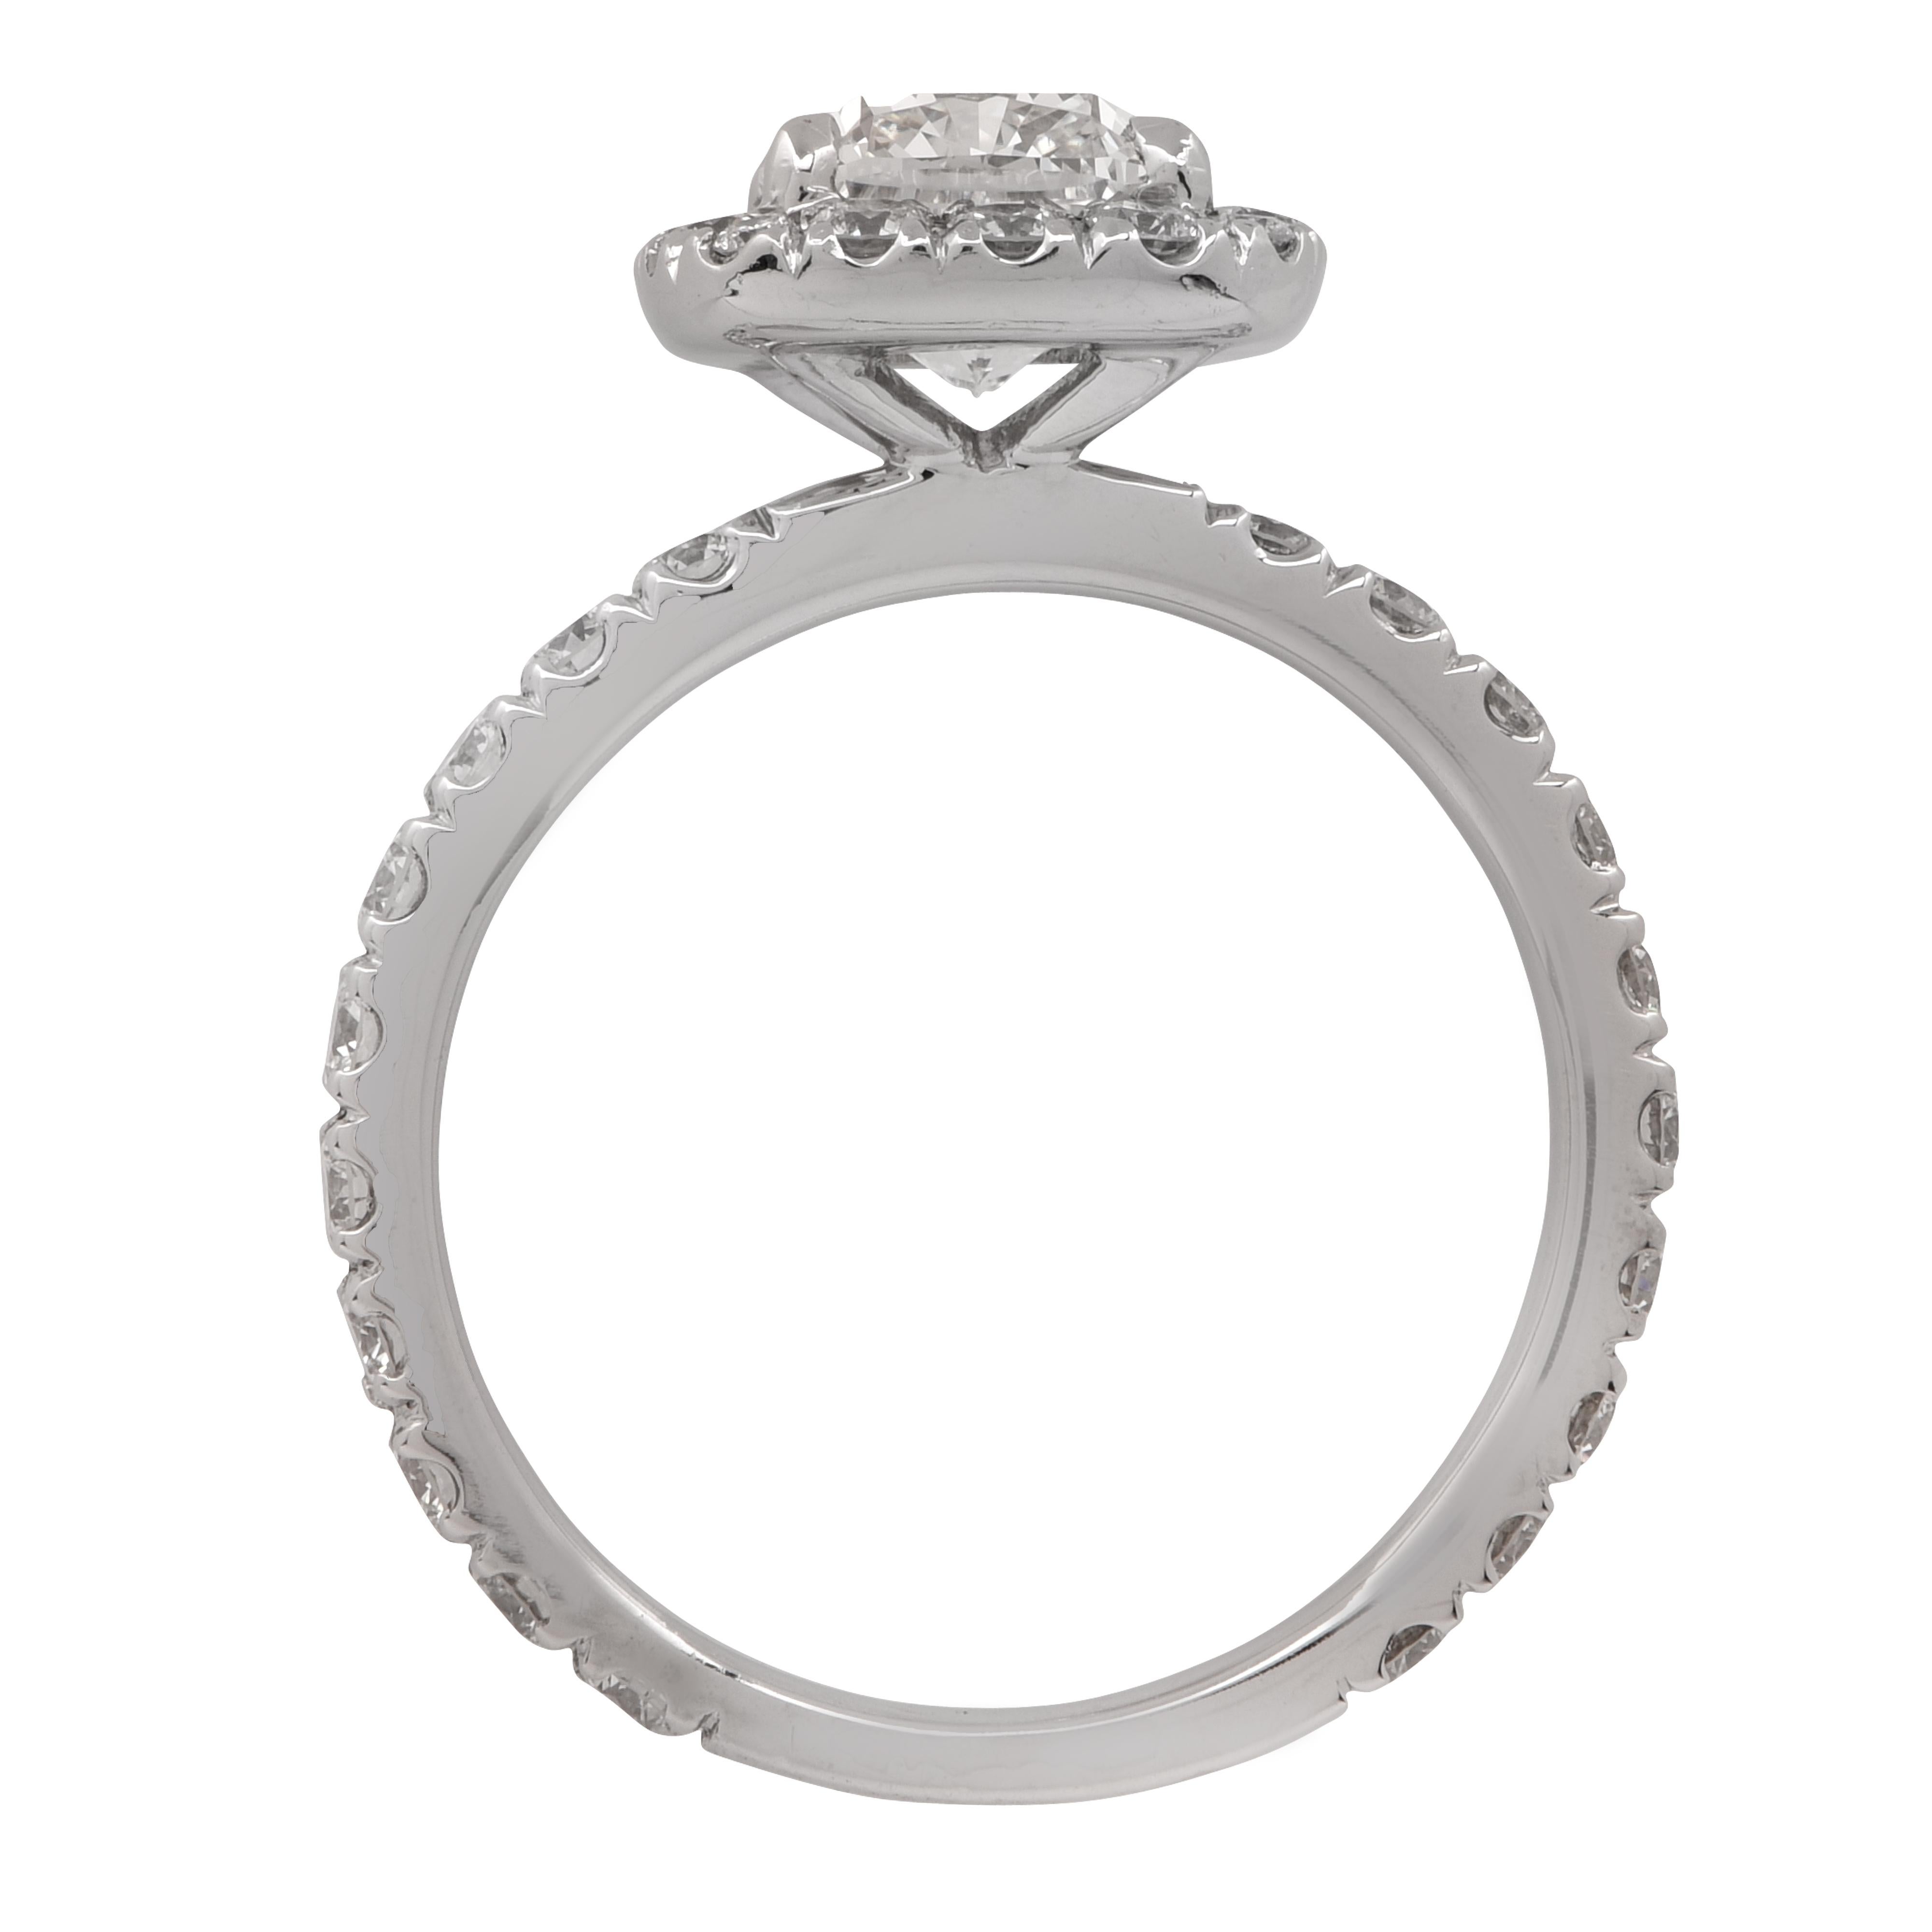 Modern GIA Certified 1.52 Carat Cushion Cut Diamond Engagement Ring